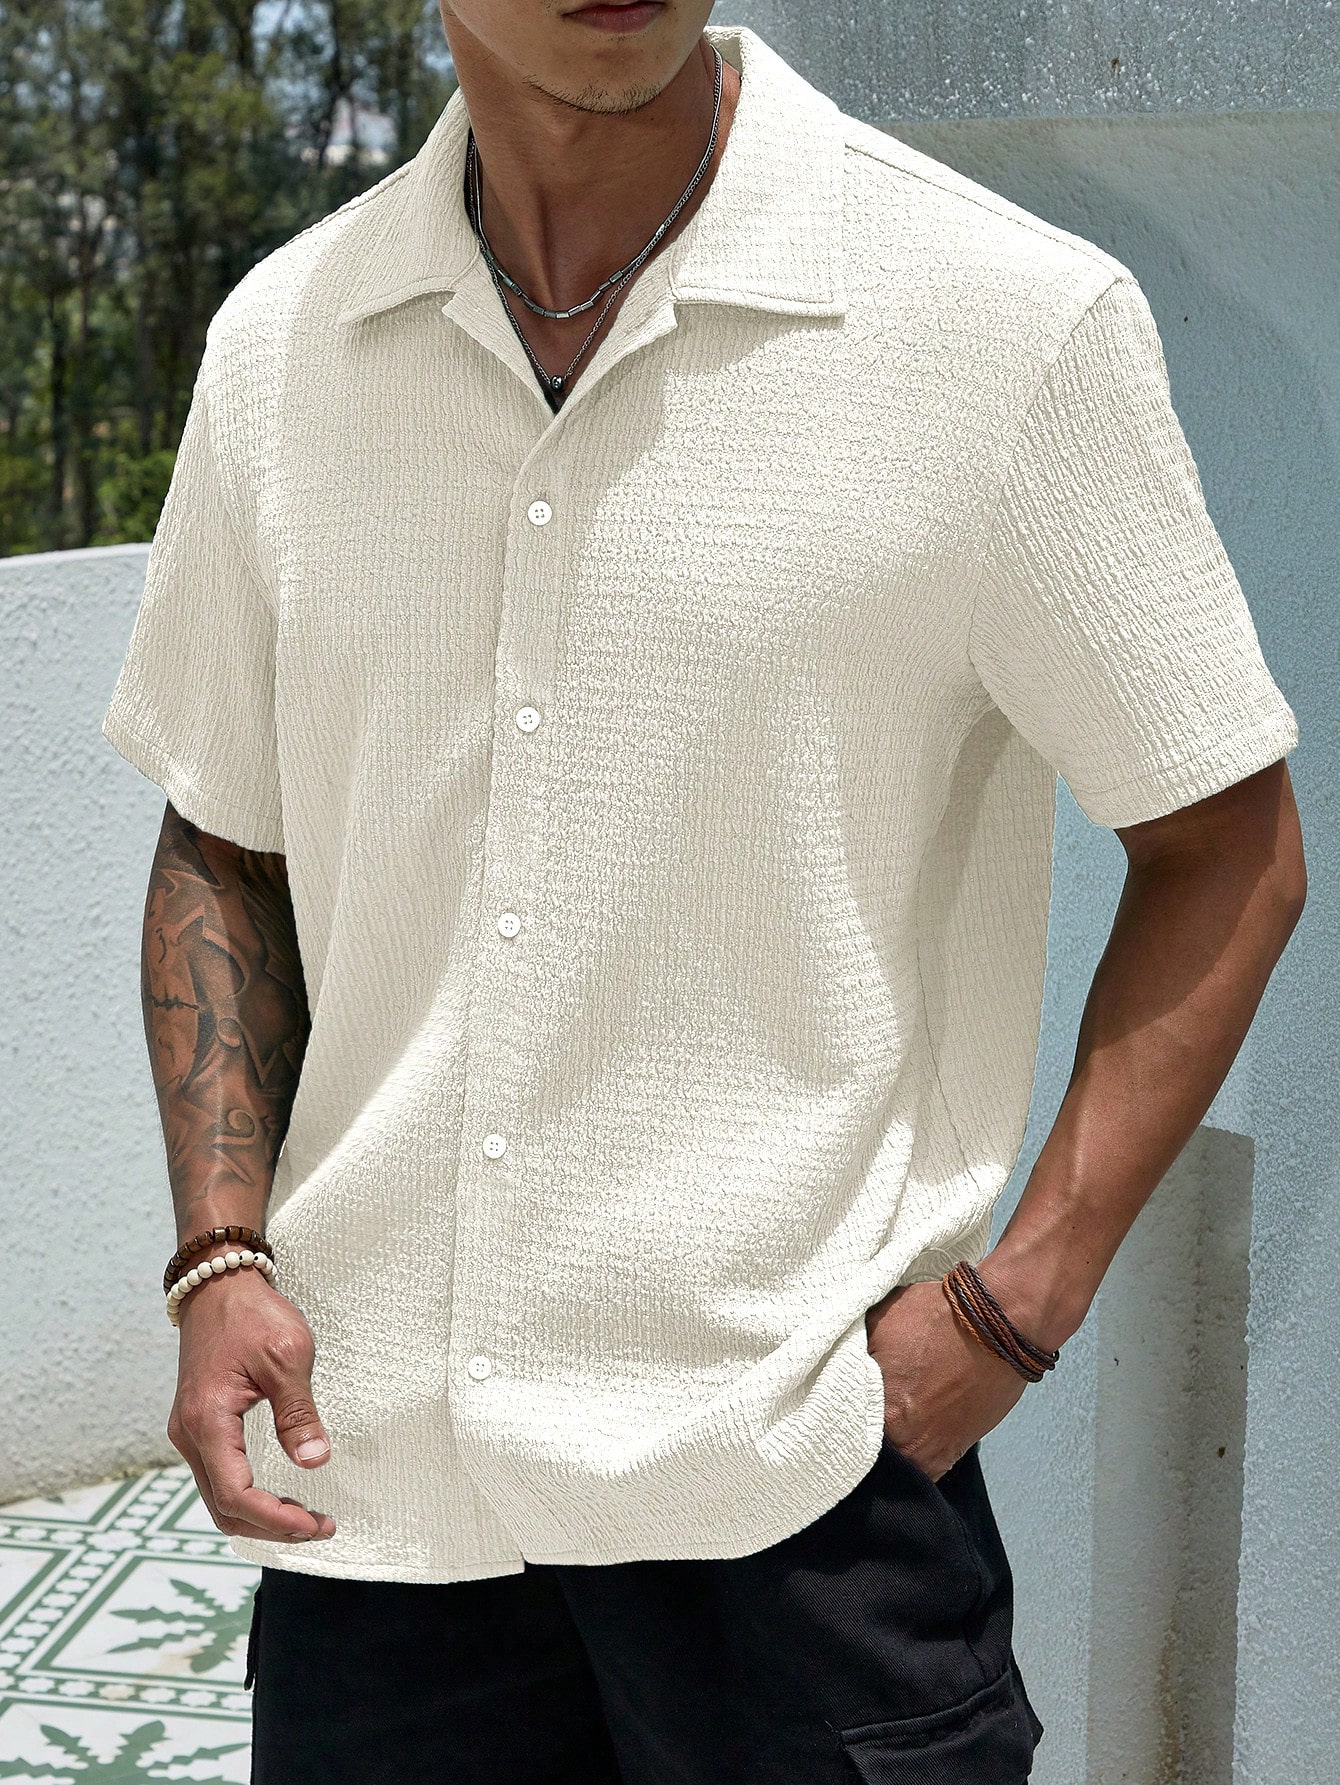 Мужская текстурированная рубашка на пуговицах с коротким рукавом Manfinity Homme, белый рубашка мужская однотонная свободного покроя хлопок длинный рукав винтажная универсальная модная блузка на пуговицах одежда оверсайз